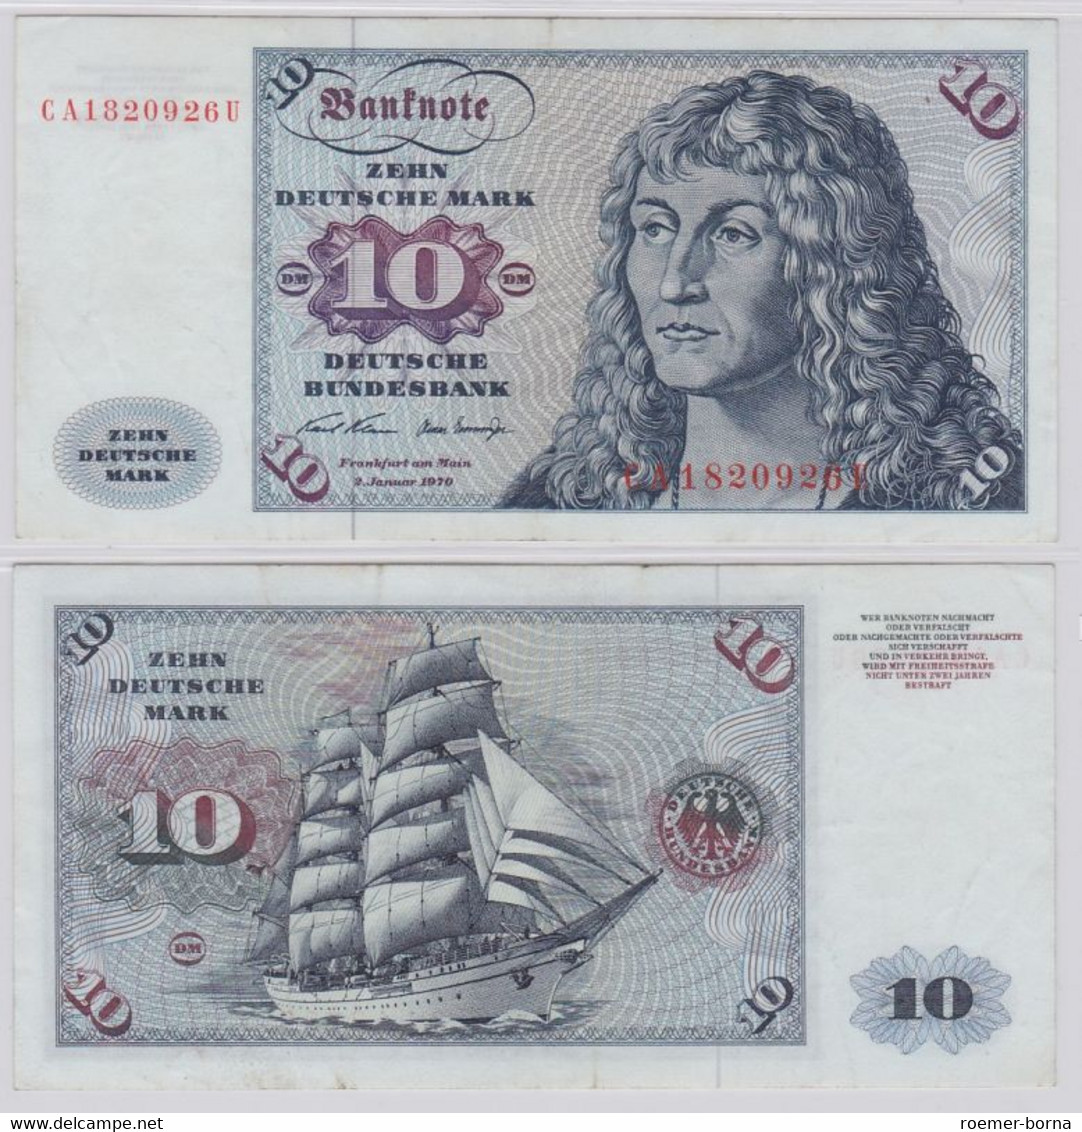 T146376 Banknote 10 DM Deutsche Mark Ro. 270a Schein 2.Jan. 1970 KN CA 1820926 U - 10 Deutsche Mark